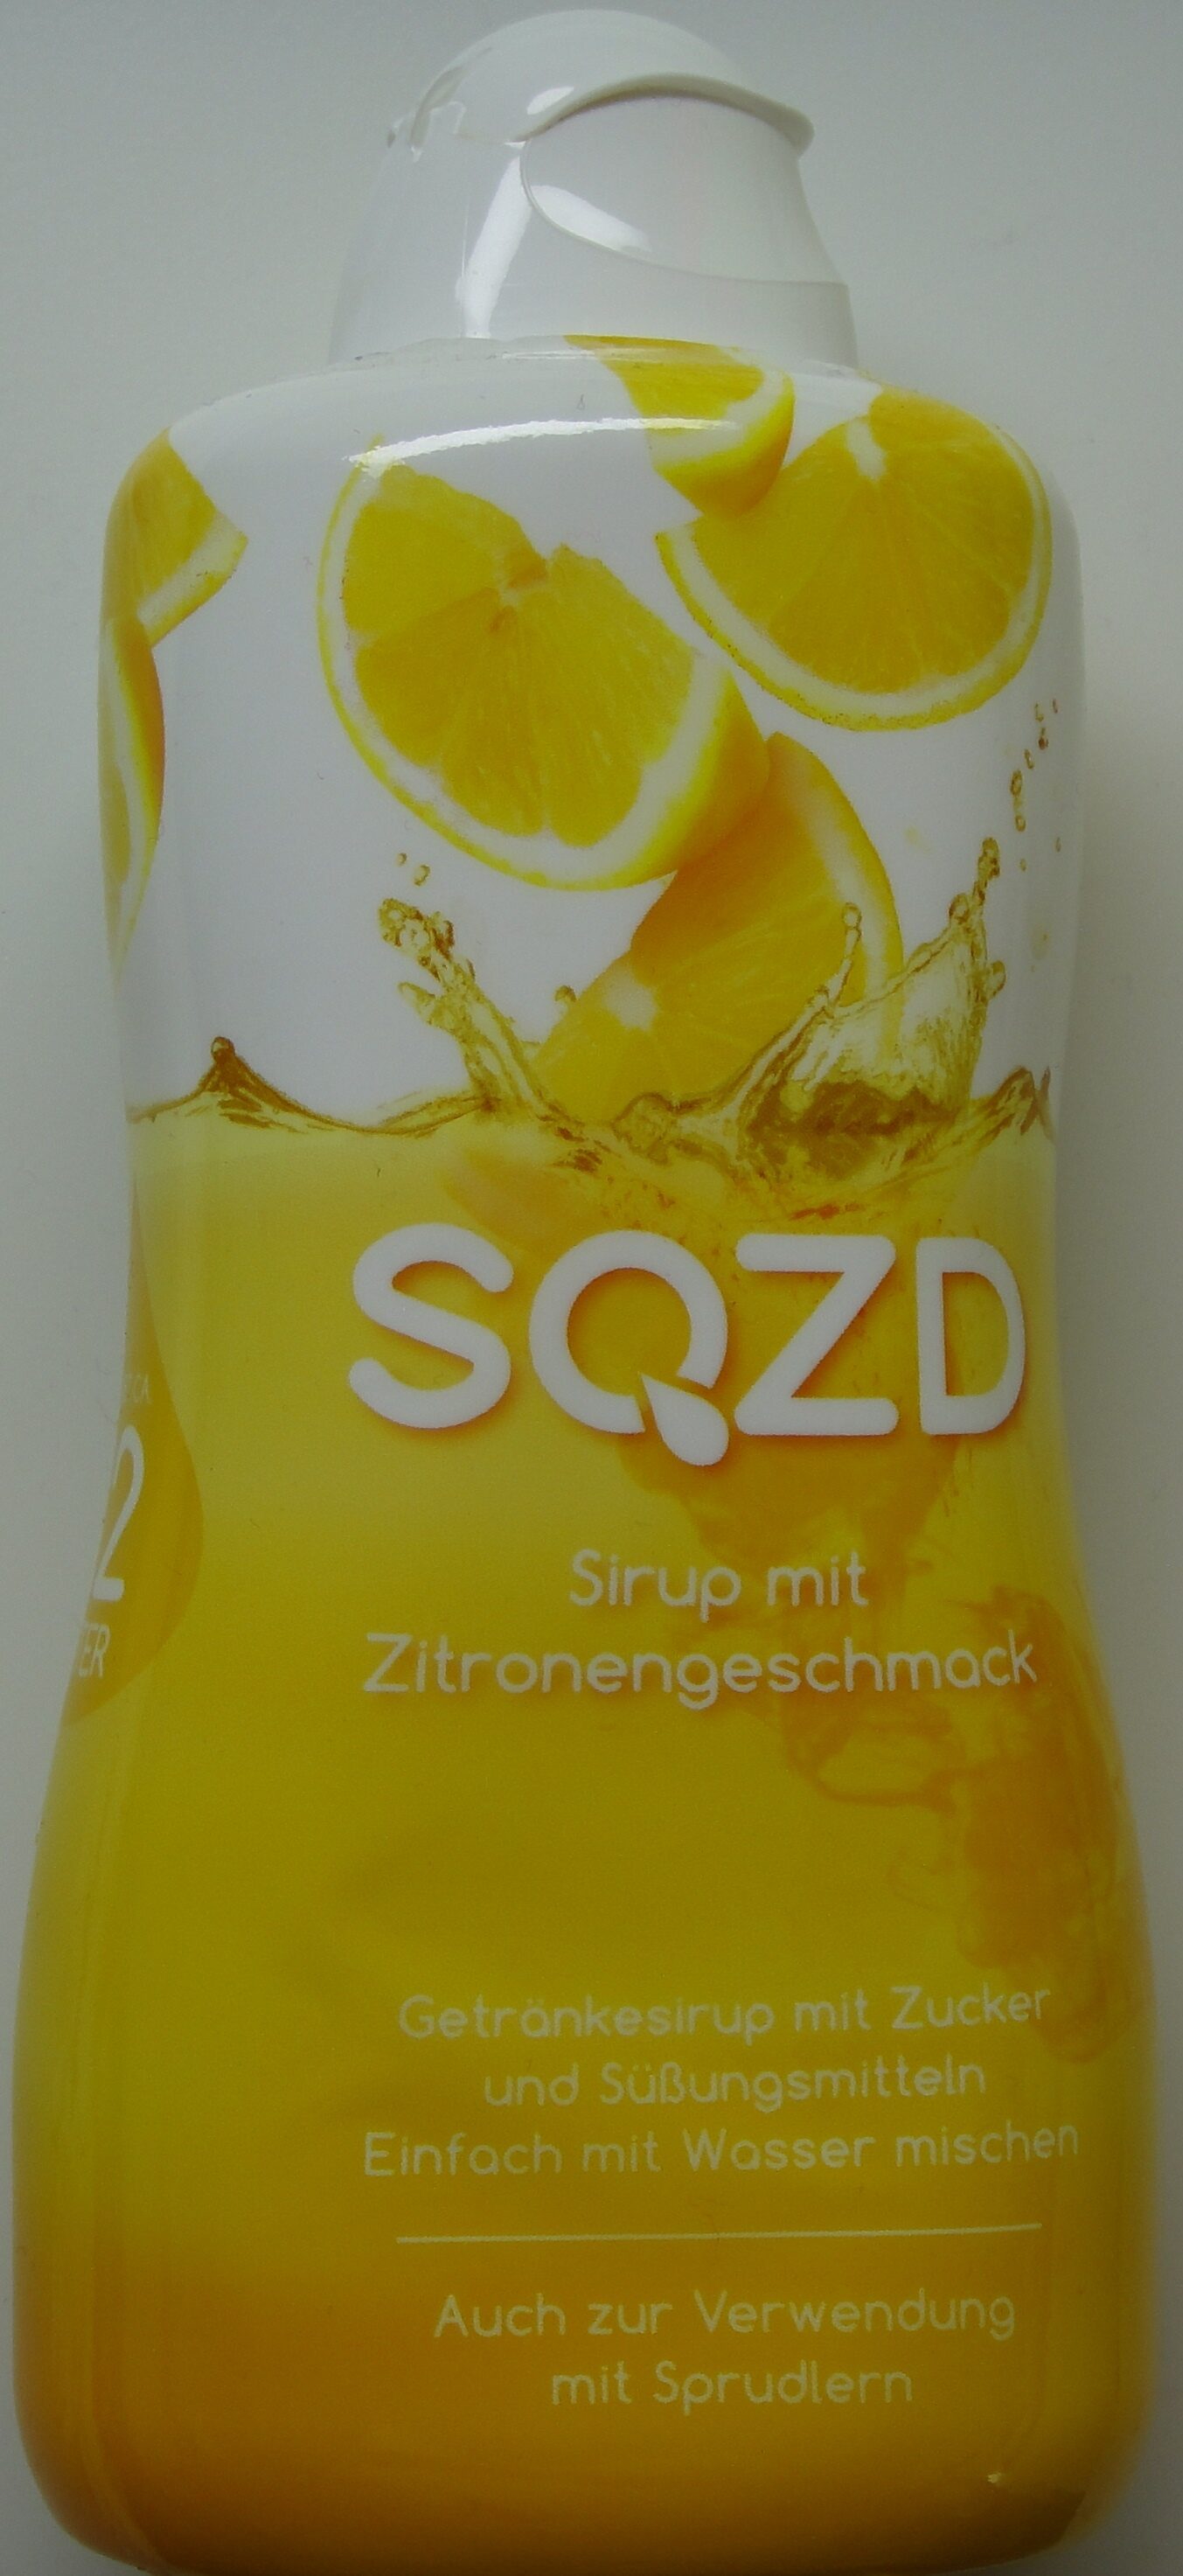 SQZD Sirup mit Zitronengeschmack - Product - de